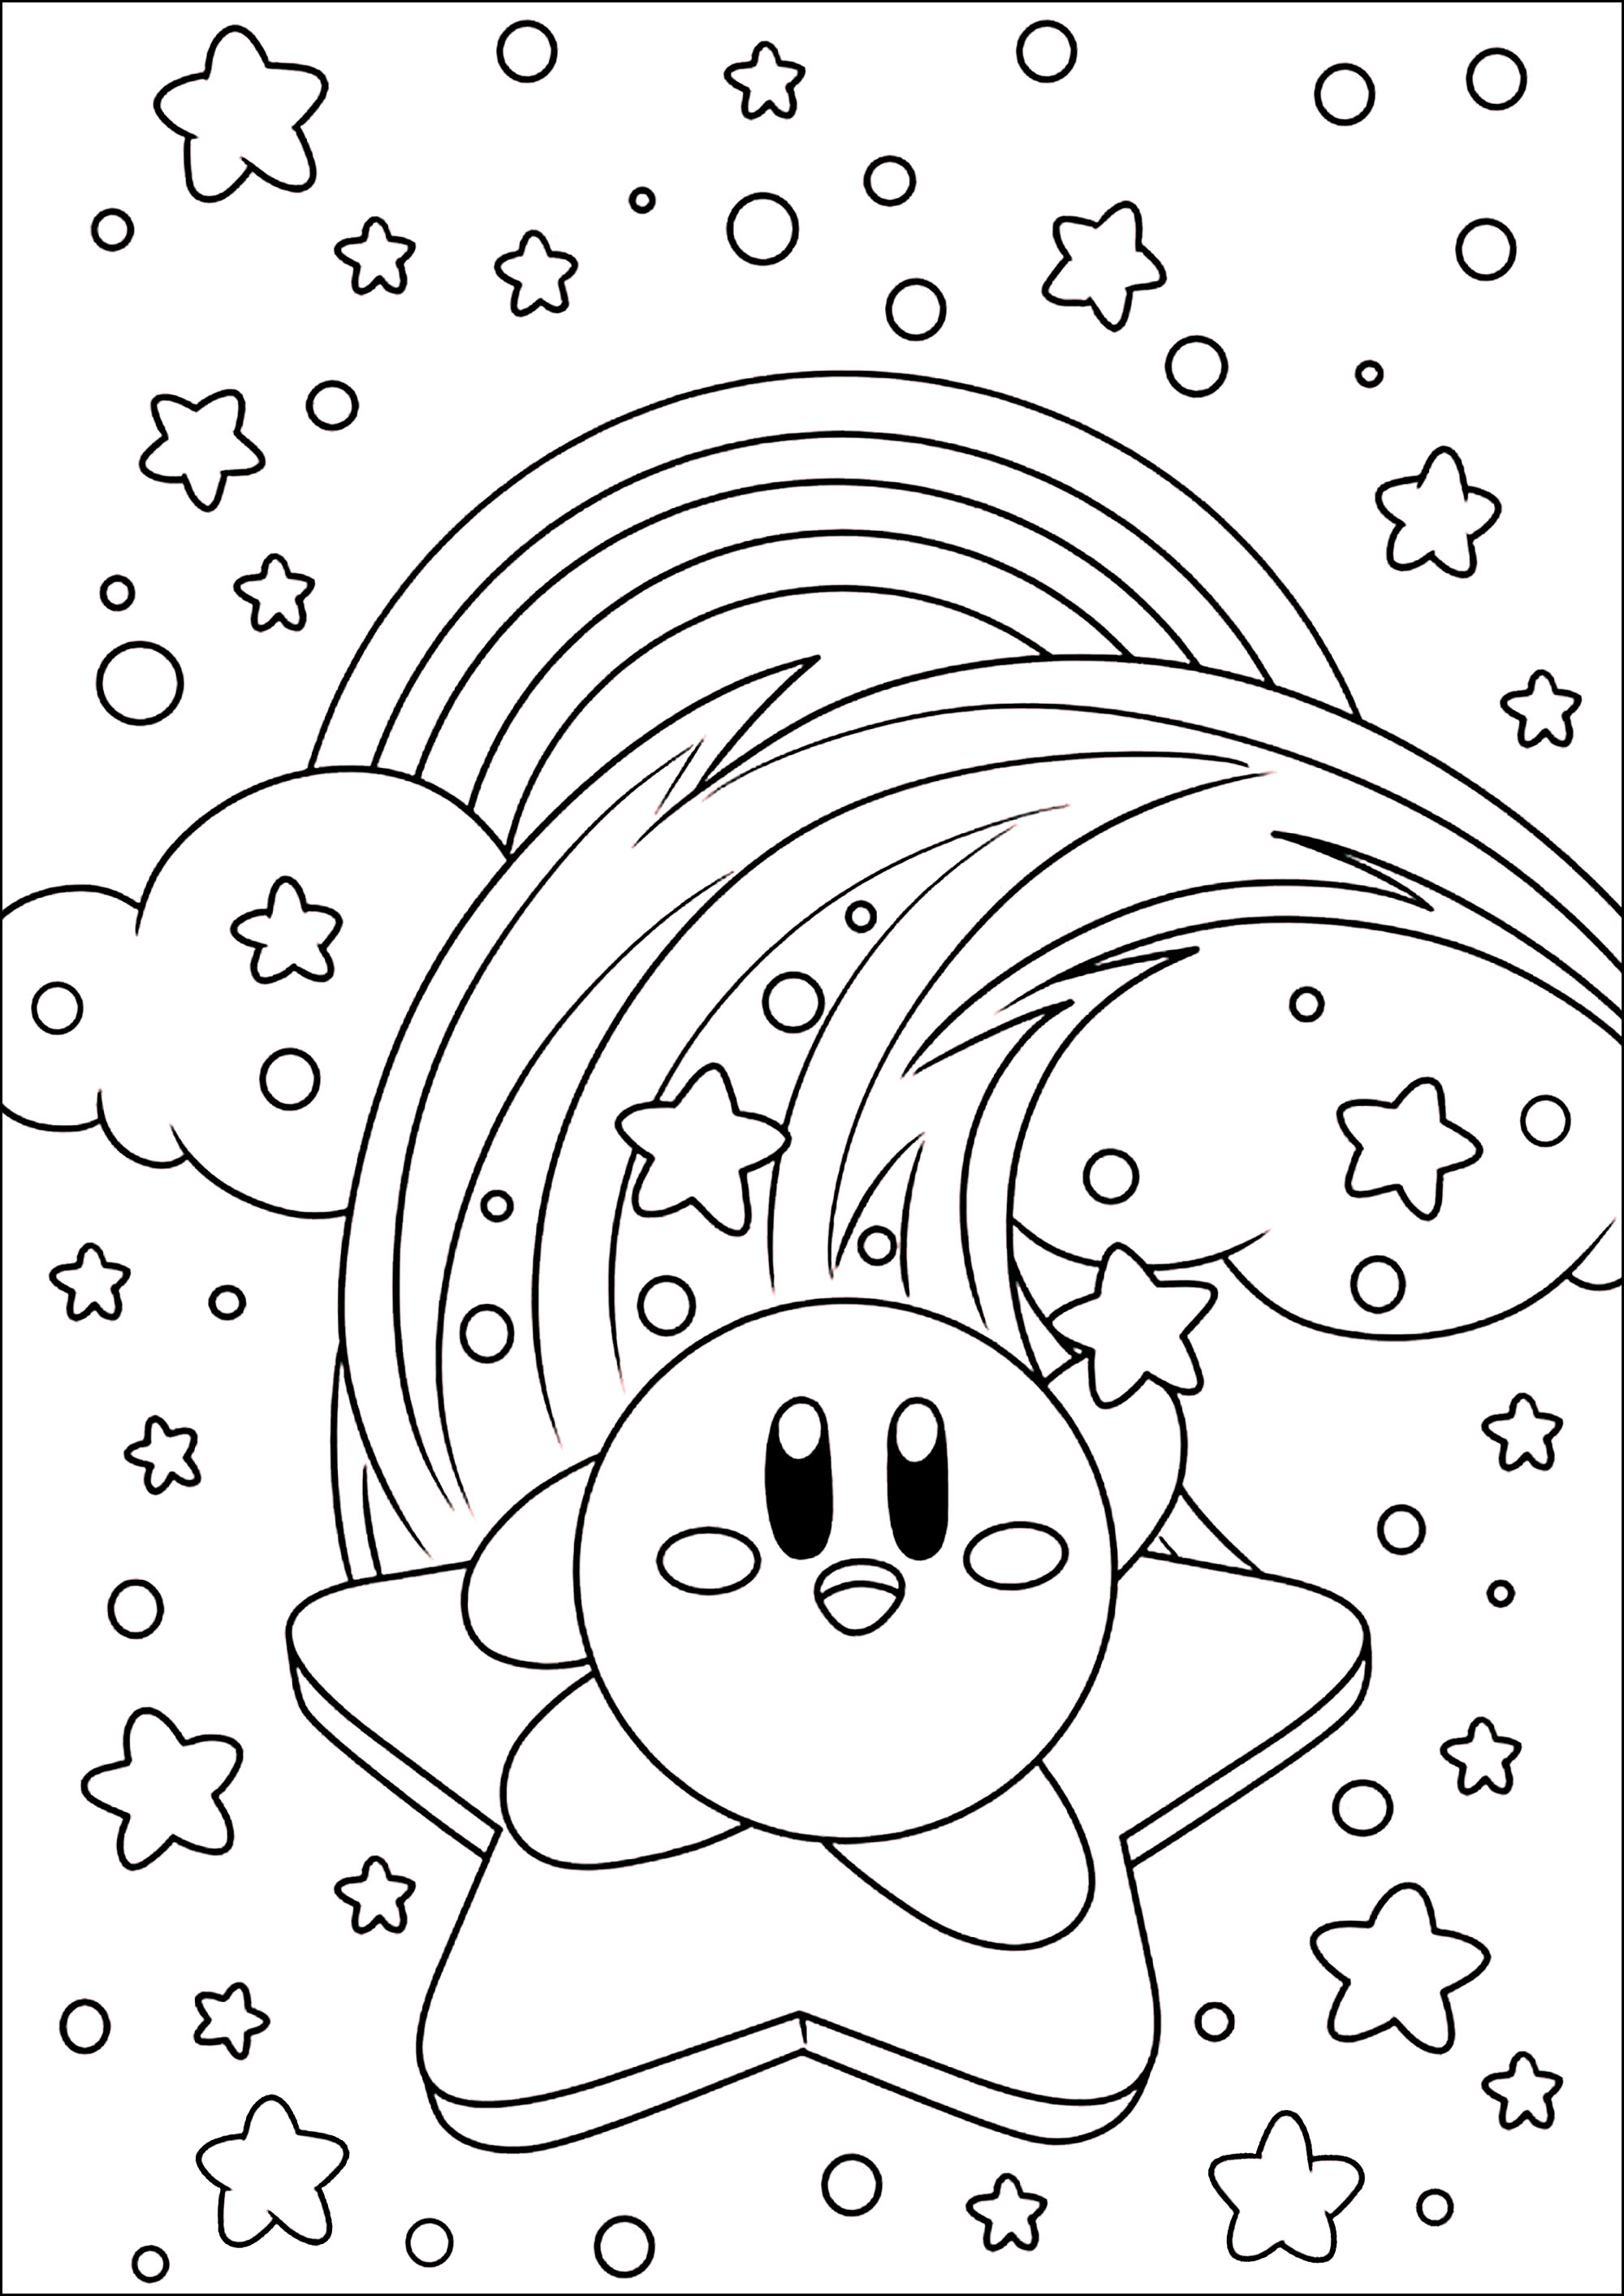 Kirby sur une étoile dans le ciel avec nuages et arc-en-ciel. Kirby (カービィ, Kābī, prononcé en japonais : [kaːbiː]) est un personnage de jeu vidéo, créé par Masahiro Sakurai pour la firme Nintendo. C'est une petite boule rose originaire de la planète Popstar et qui aspire ses ennemis pour « copier » leurs pouvoirs.